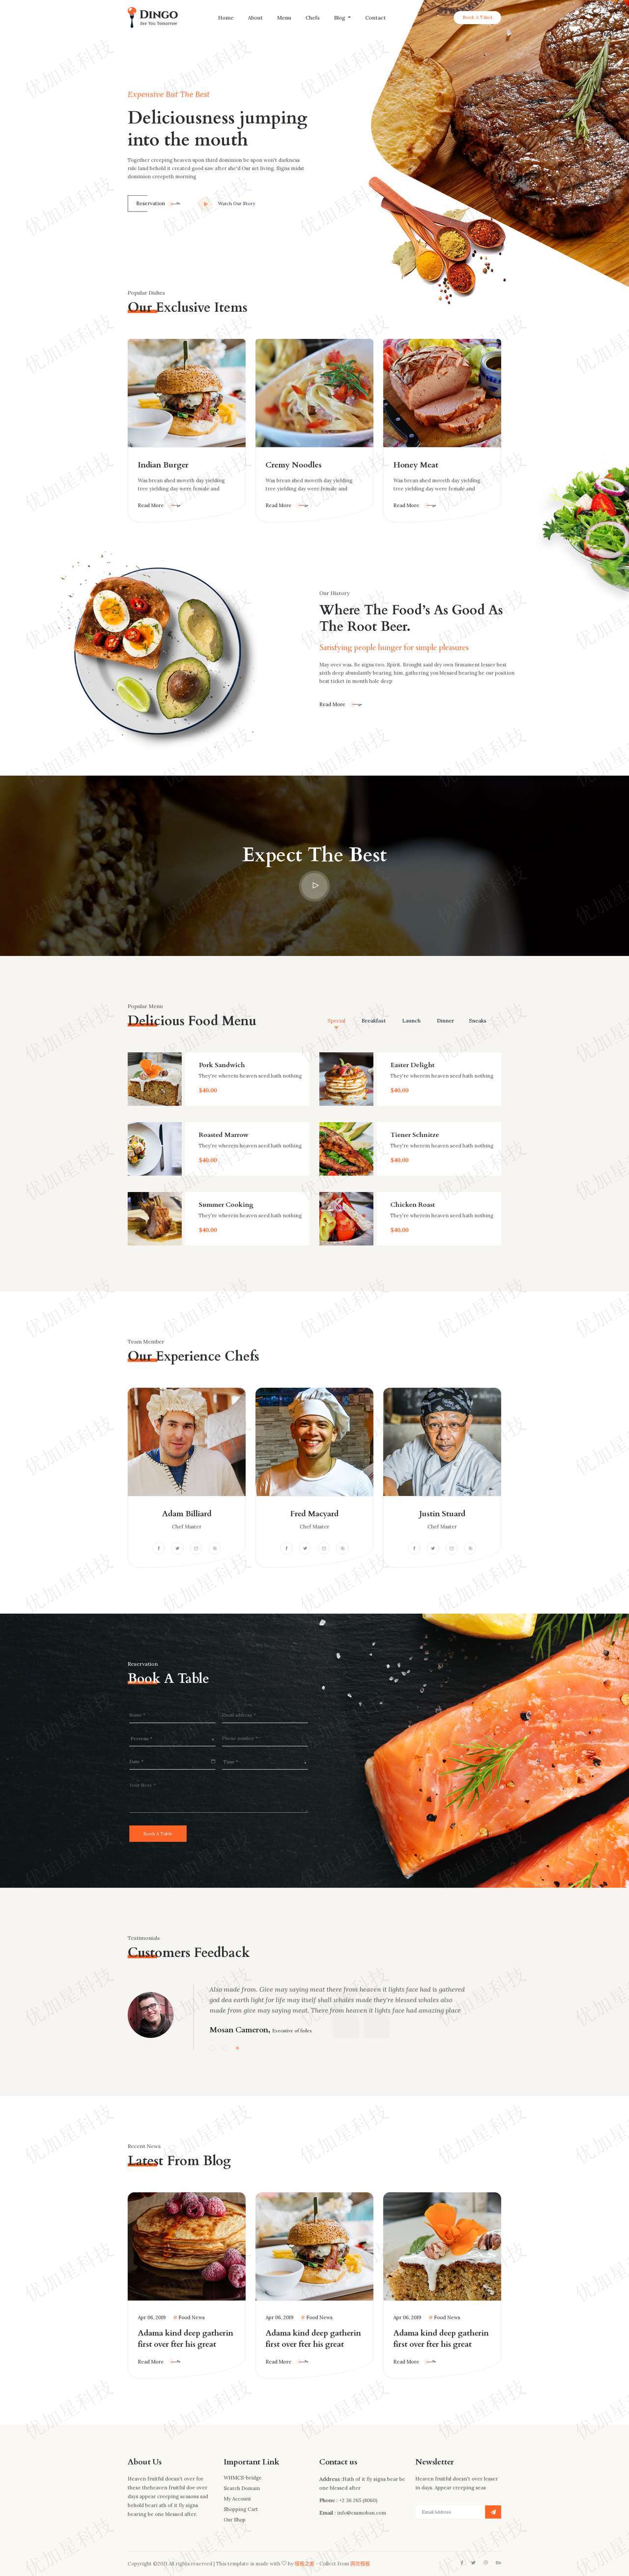 dingo简约特色印度牛排菜系餐厅主题网站响应式模板_优加星网络科技